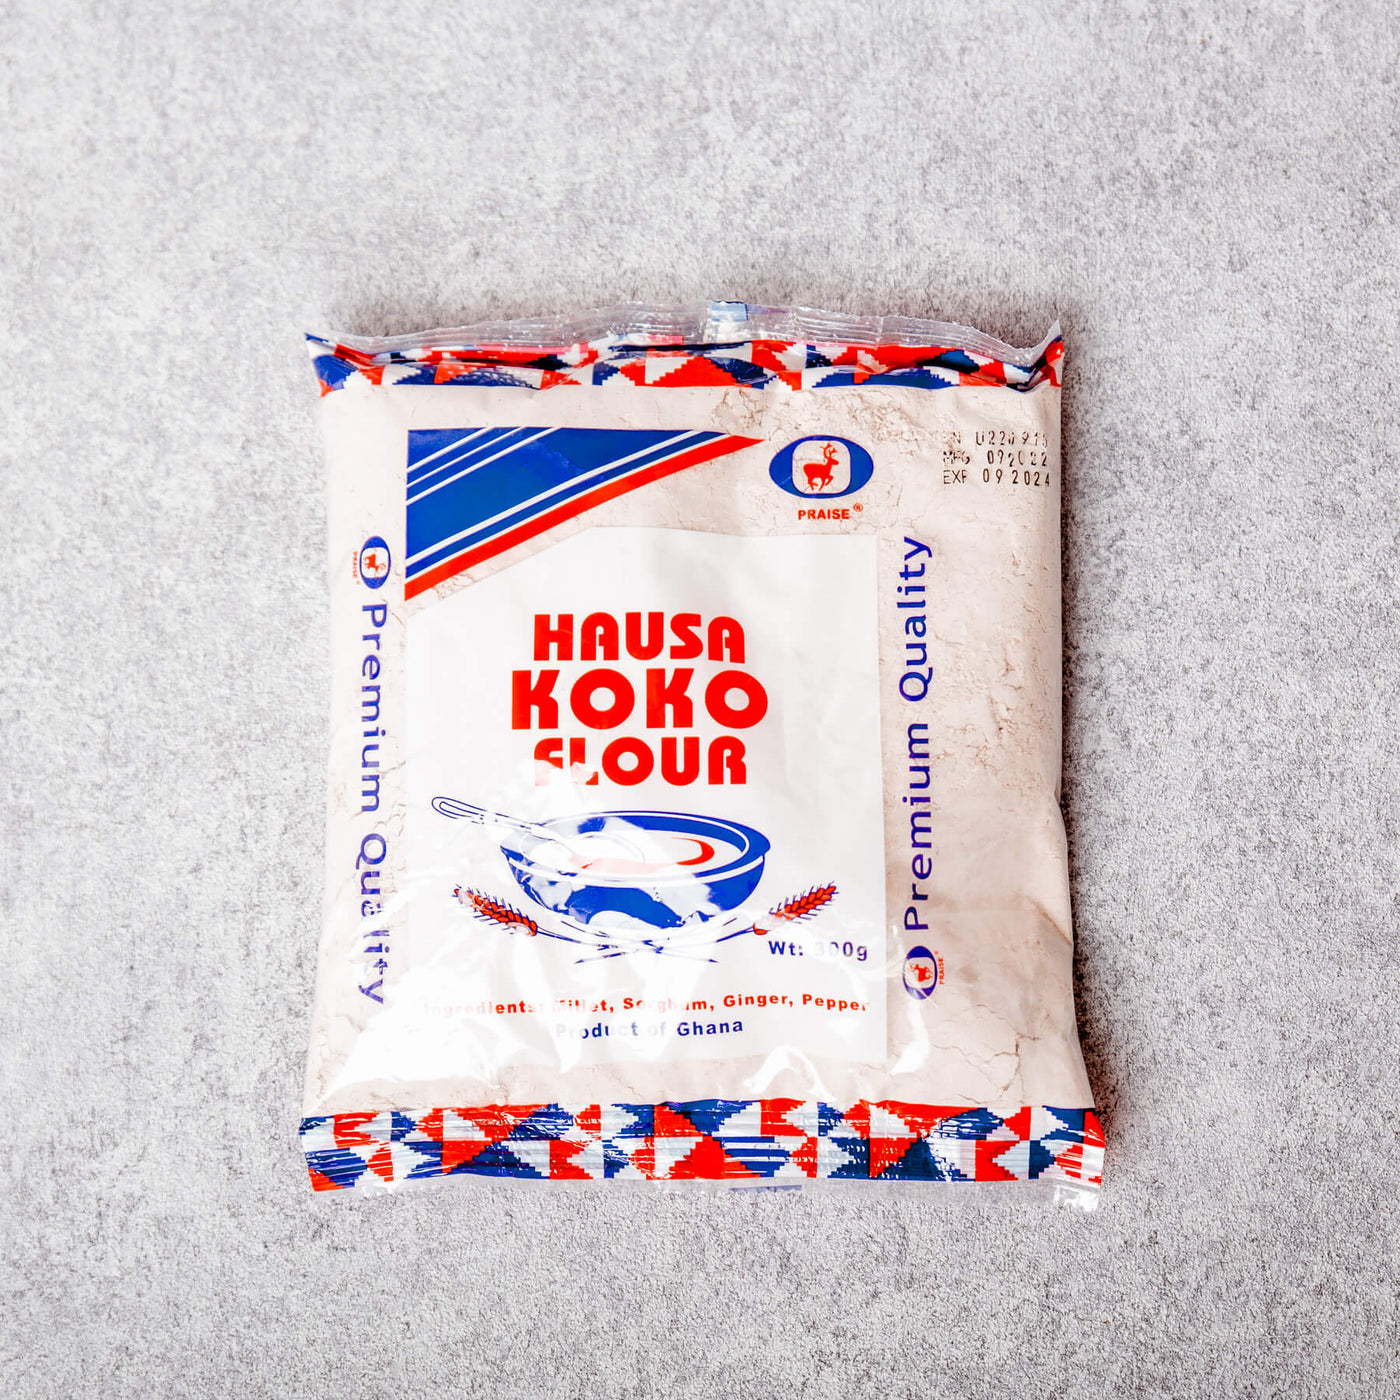 Praise - Hausa Koko Flour